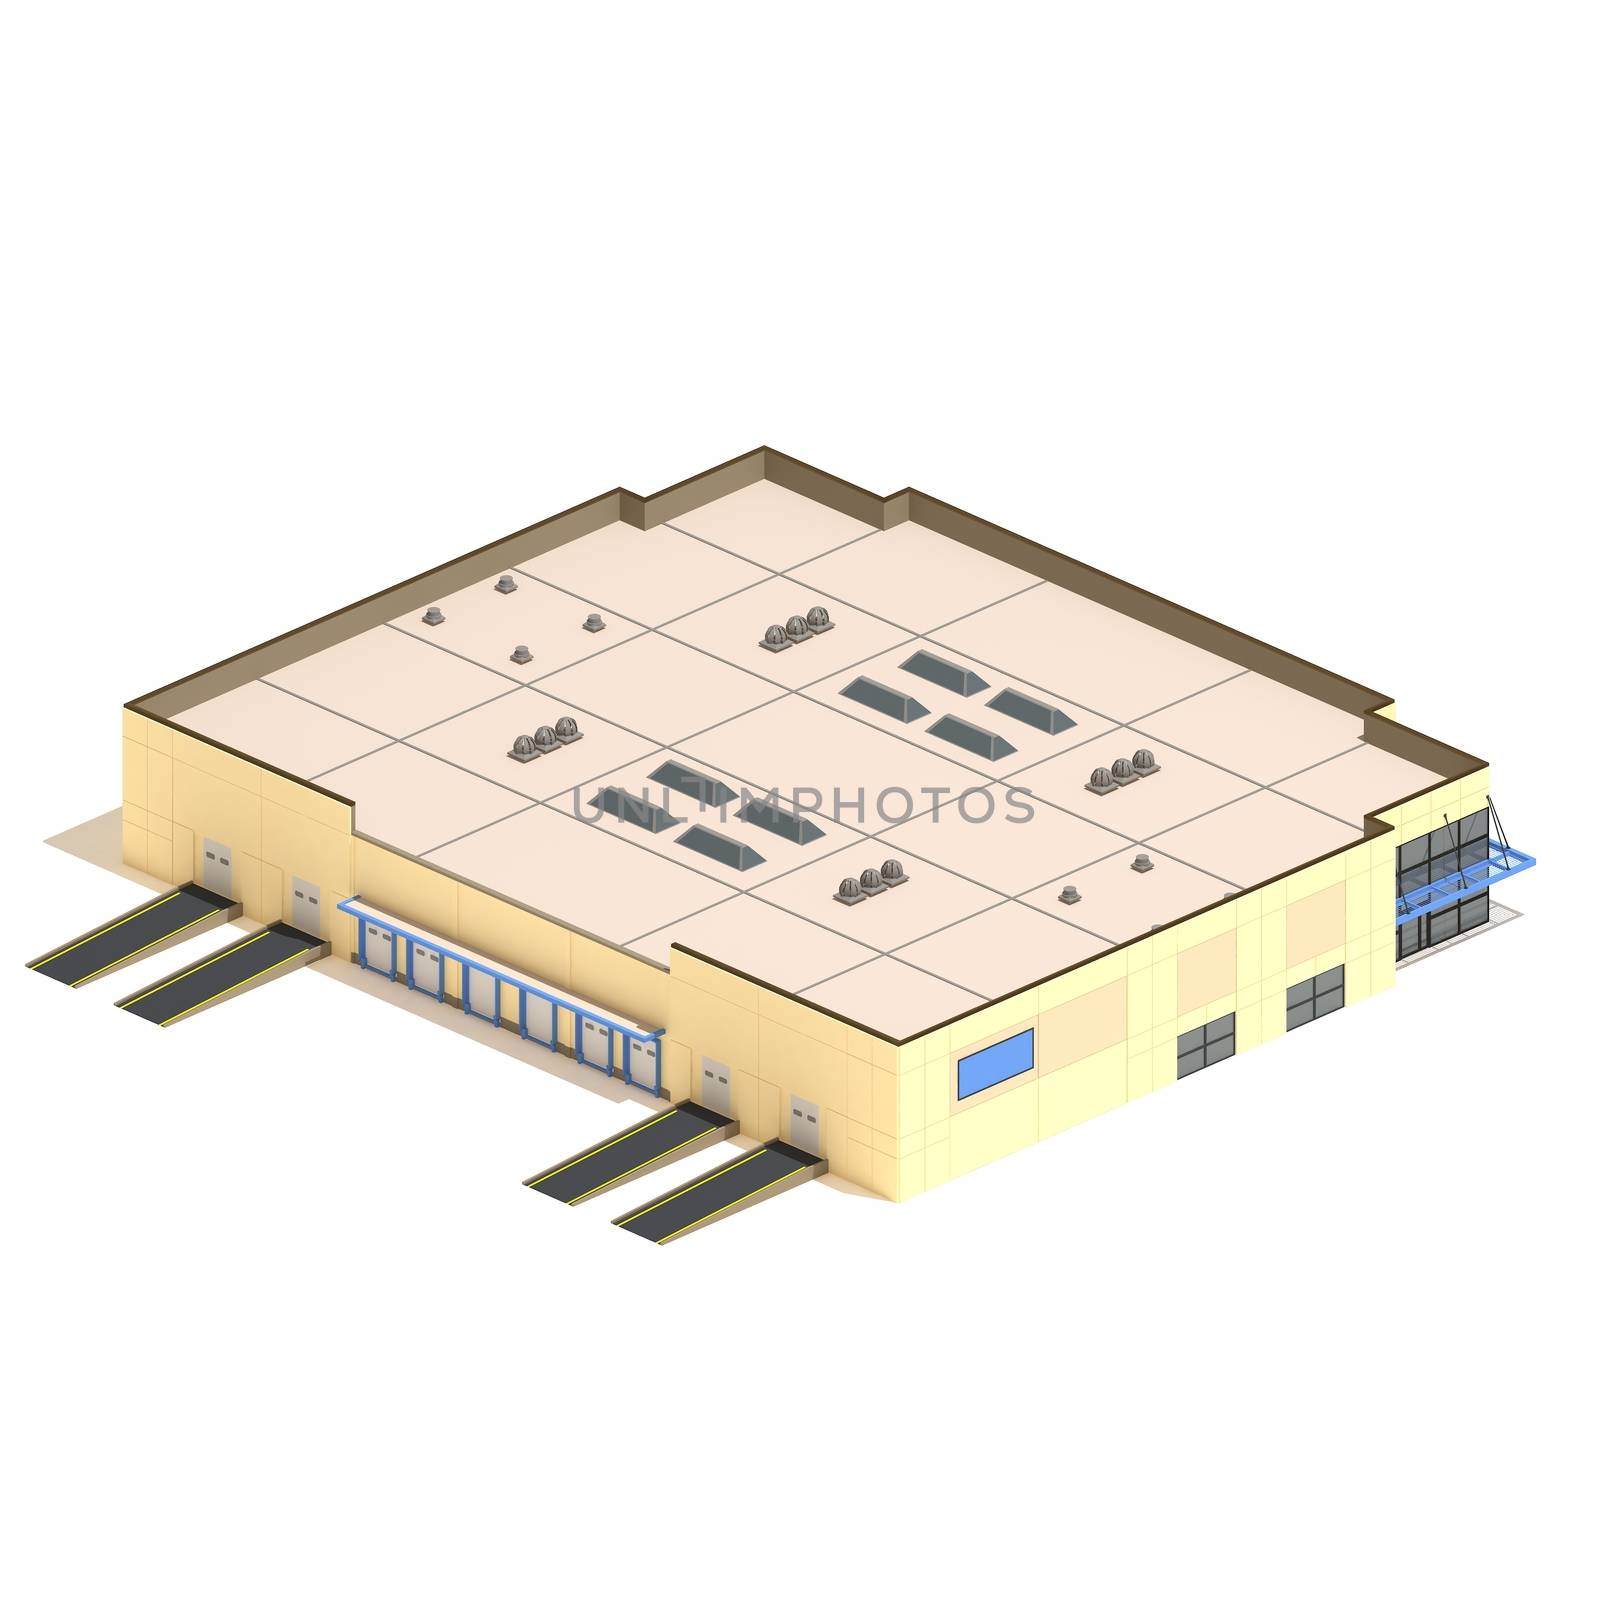 Flat 3d model isometric warehouse building illustration isolated on white background. by ingalinder